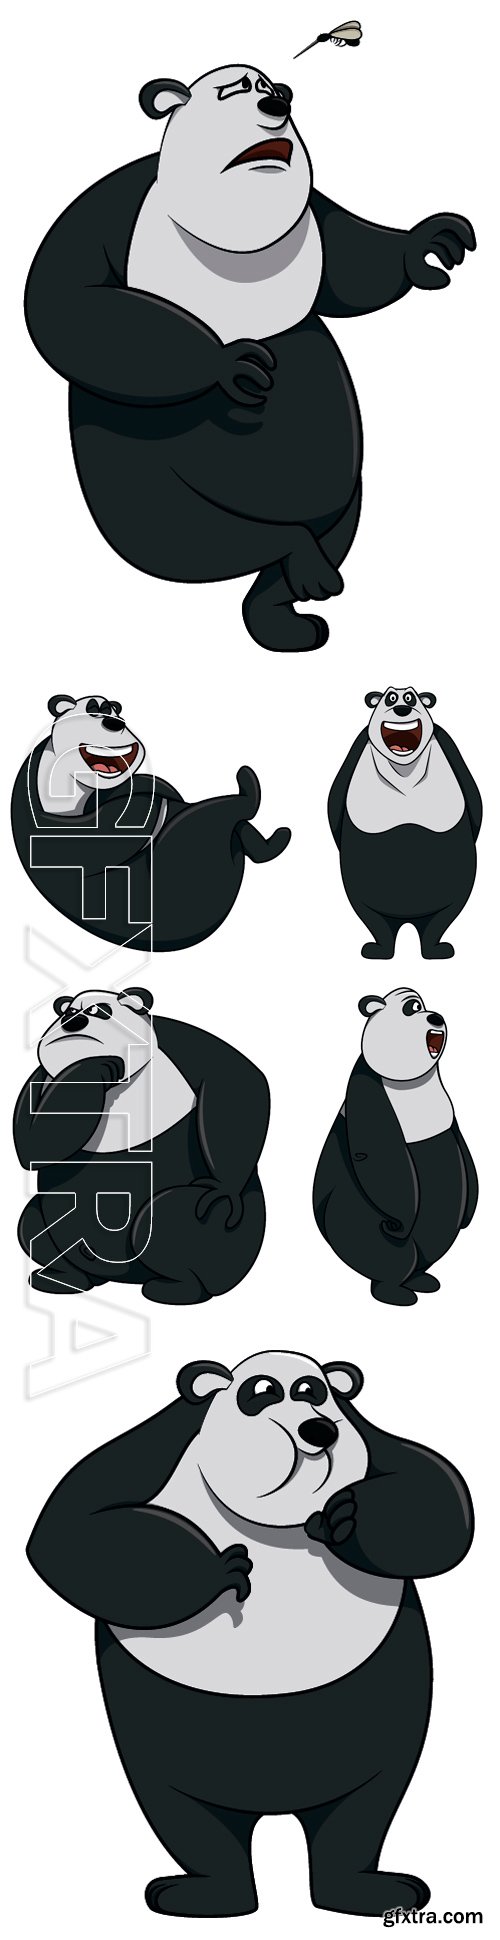 Stock Vectors - Panda cartoon character